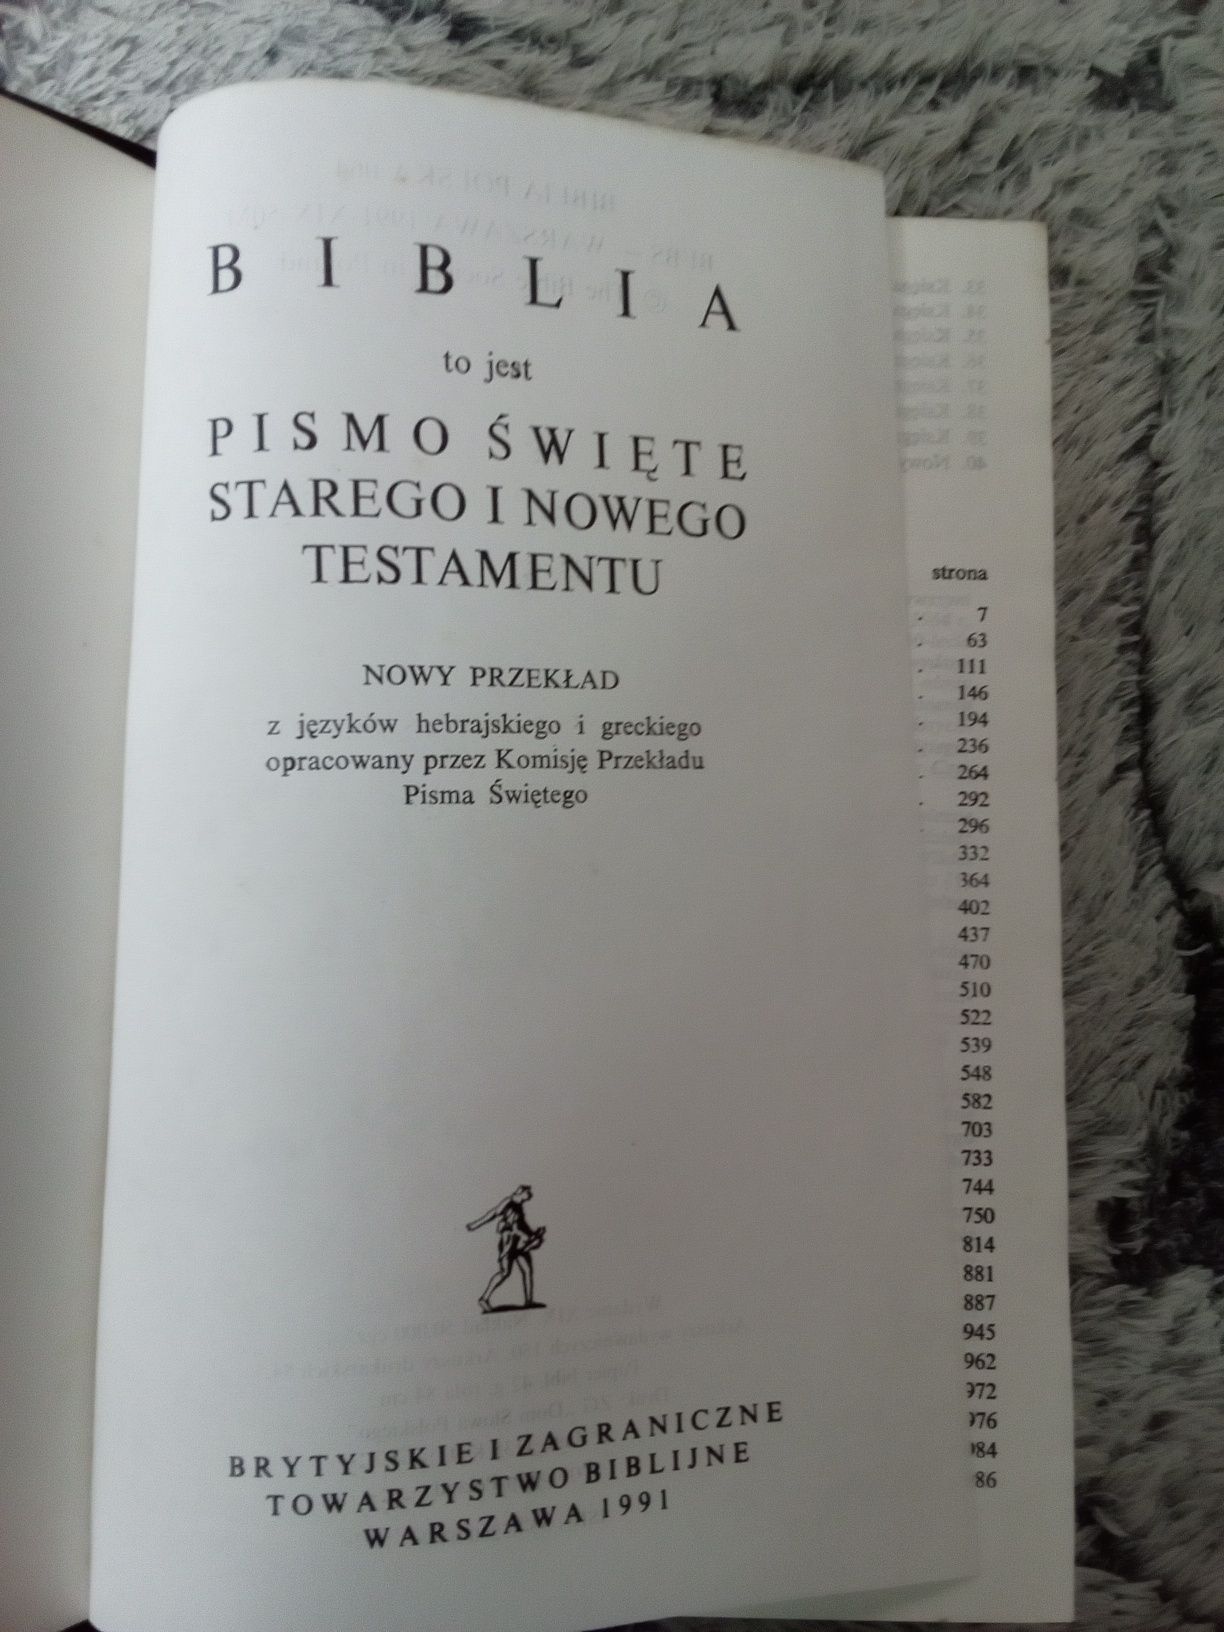 Biblia Brytyjskie i Zagraniczne Towarzystwo Biblijne Warszawa 1991